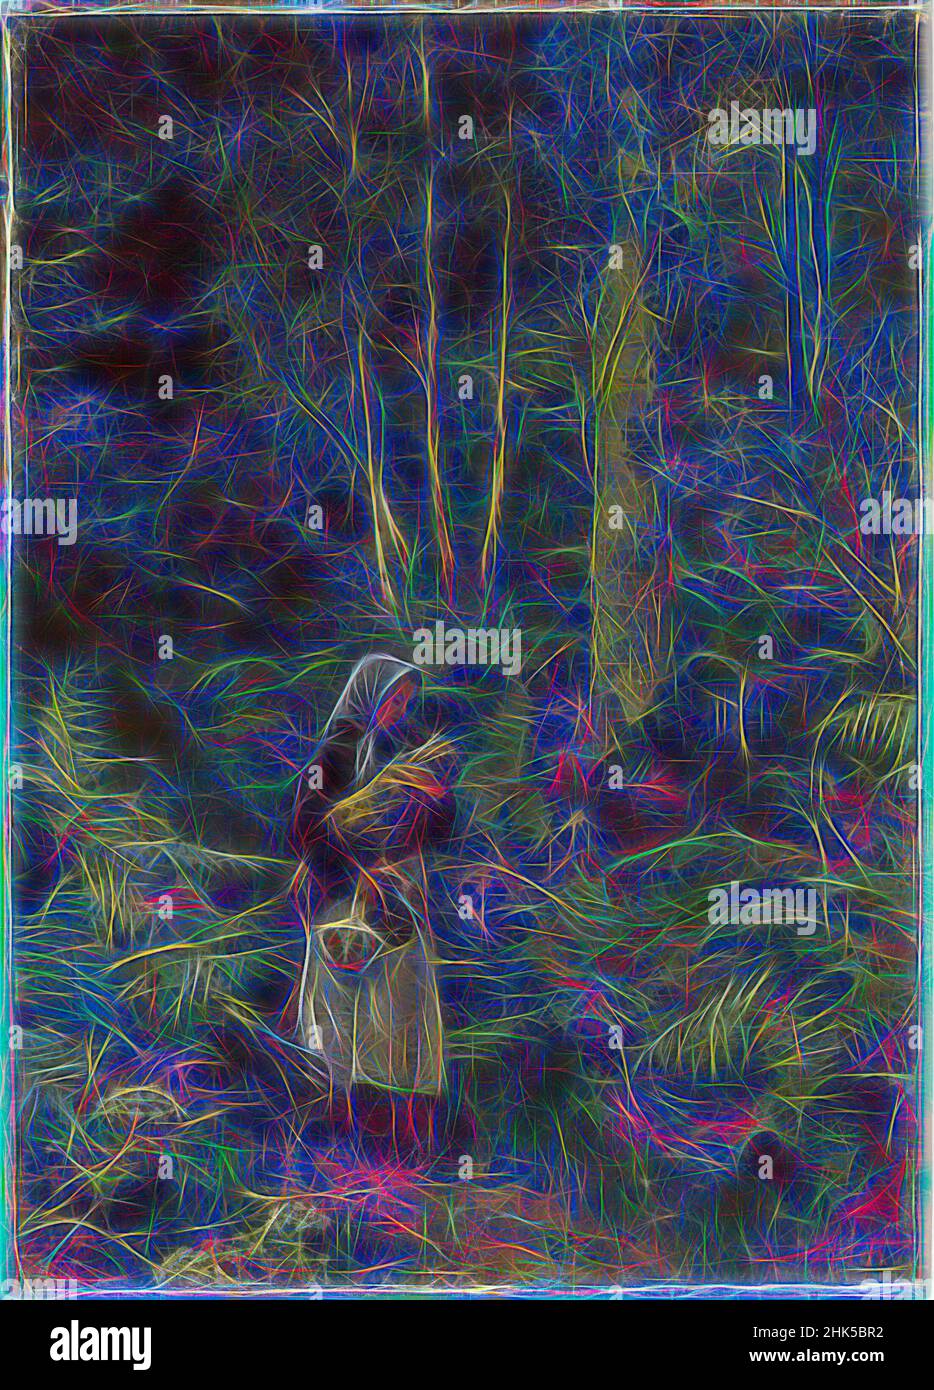 Inspirée par un Babe dans les Bois, Lady Laura Theresa Alma-Tadema, britannique, 1852-1909, huile sur toile montée sur panneau, Angleterre, ca. 1879-1880, 12 1/4 x 9 po, 31,1 x 22,9 cm, seul, bébé, enfant, pays, Européen, fougères, forêt, innocence, paysage, luxuriant, mère, mère et enfant, plein air, chemin, Repensé par Artotop. L'art classique réinventé avec une touche moderne. Conception de lumière chaleureuse et gaie, de luminosité et de rayonnement de lumière. La photographie s'inspire du surréalisme et du futurisme, embrassant l'énergie dynamique de la technologie moderne, du mouvement, de la vitesse et révolutionne la culture Banque D'Images